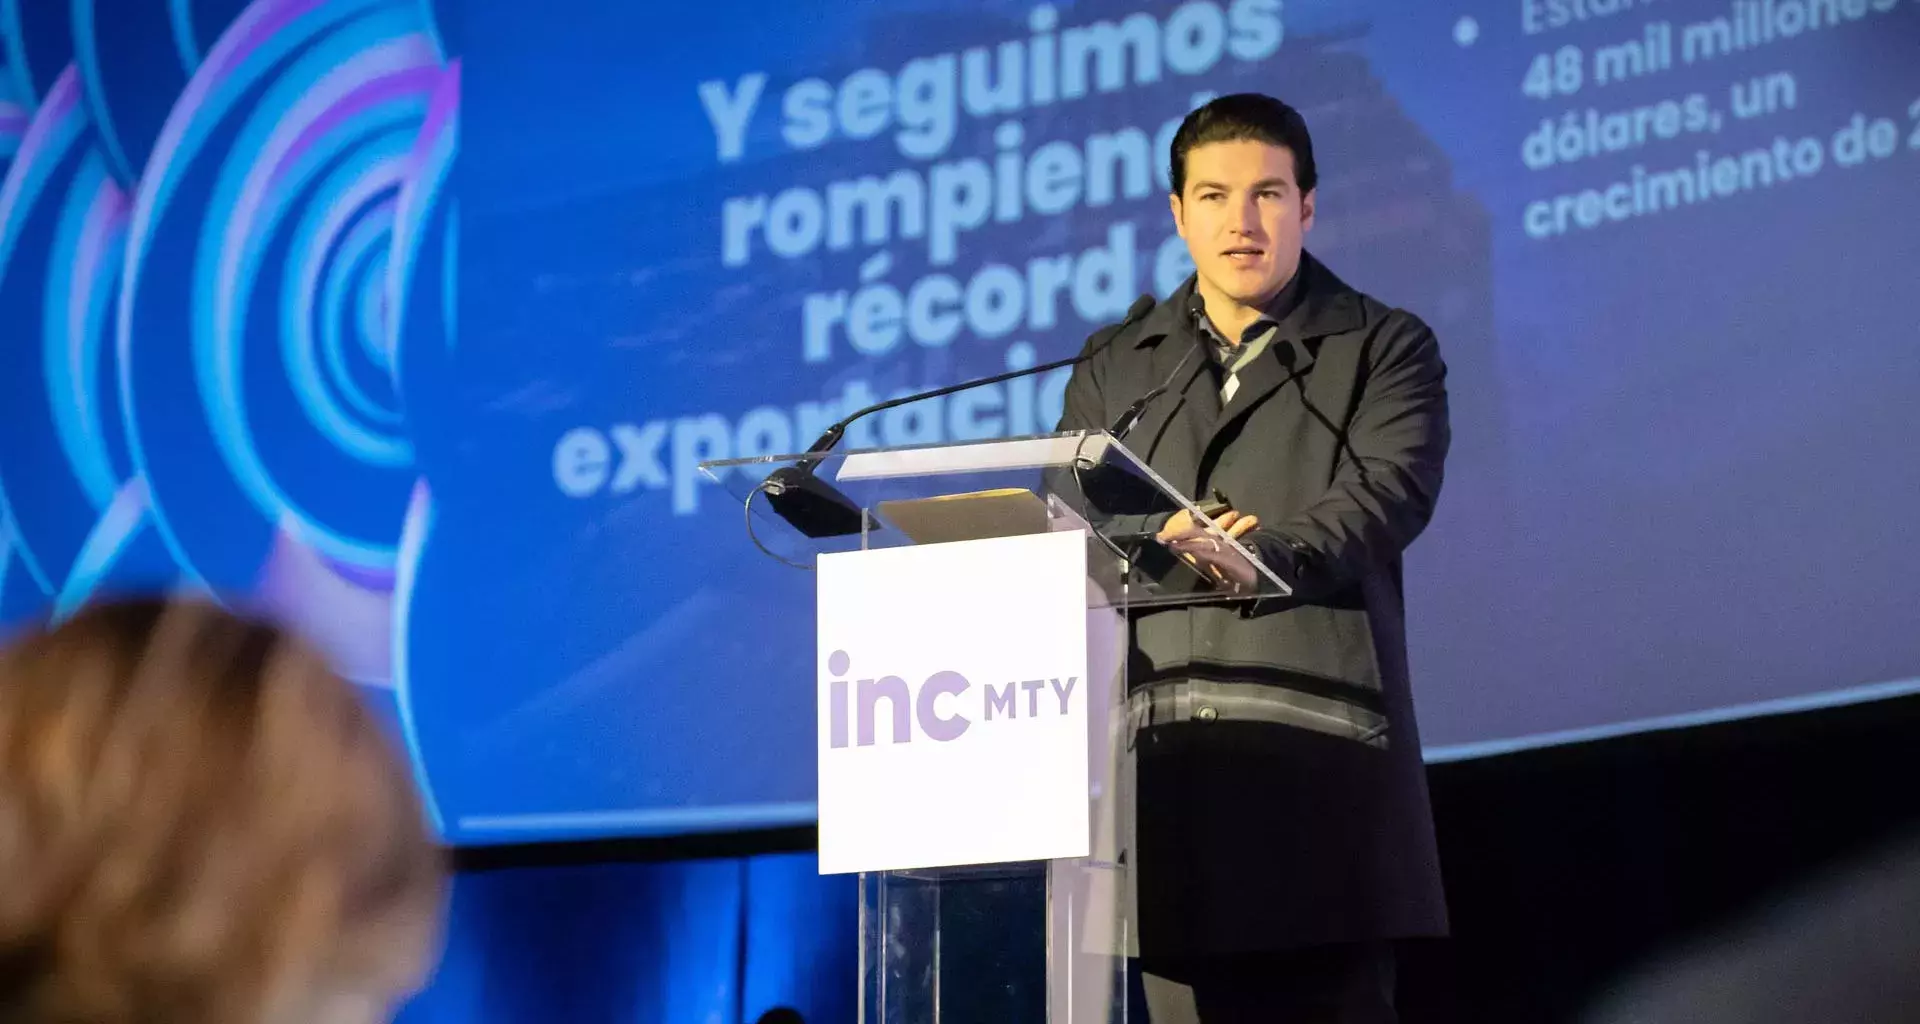 Samuel García dio un discurso en INCmty sobre la plataforma de apoyo de emprendimiento Peak Nuevo León